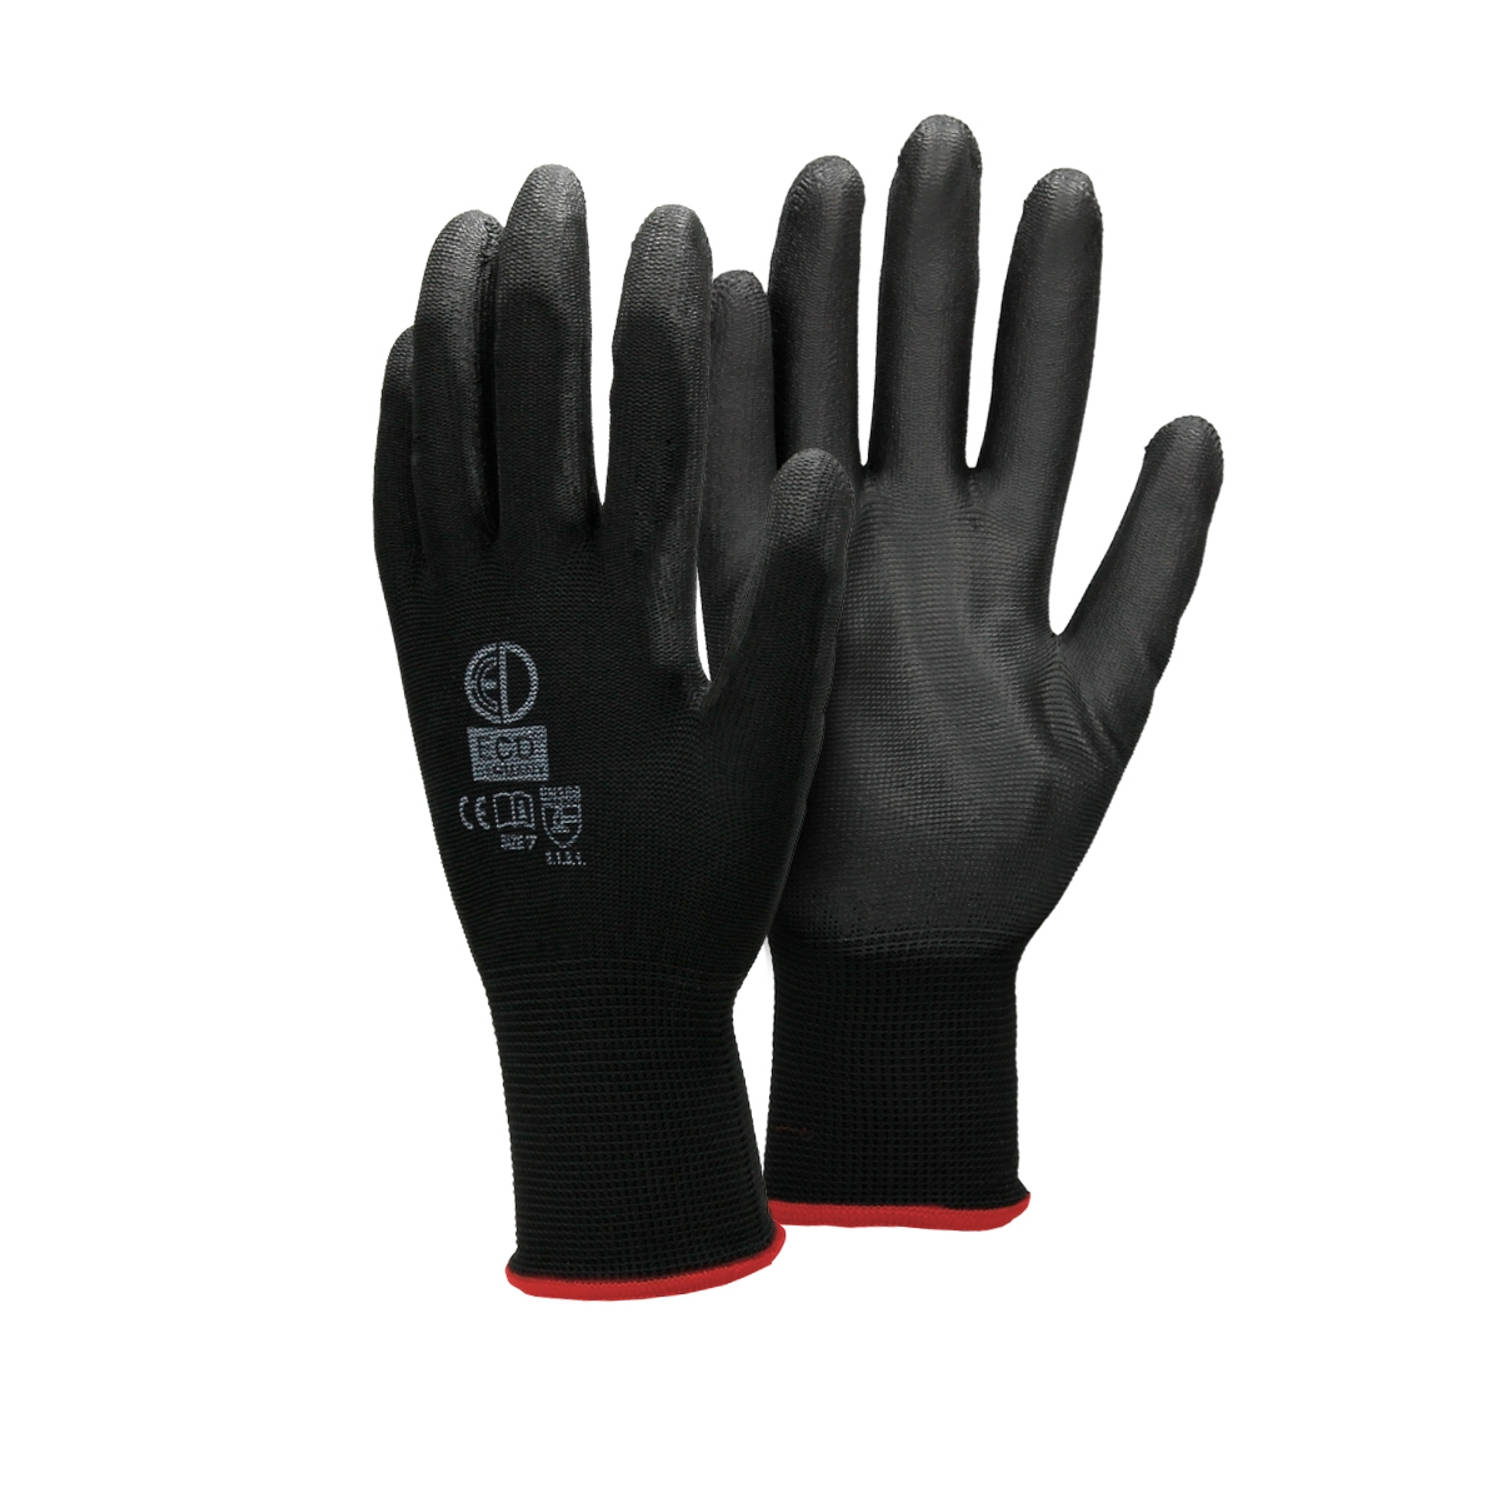 ECD Germany 240 paar werkhandschoenen met PU coating - maat 7-S - zwart - monteurshandschoenen montagehandschoenen beschermende handschoenen tuinhandschoenen - diverse kleuren & ma